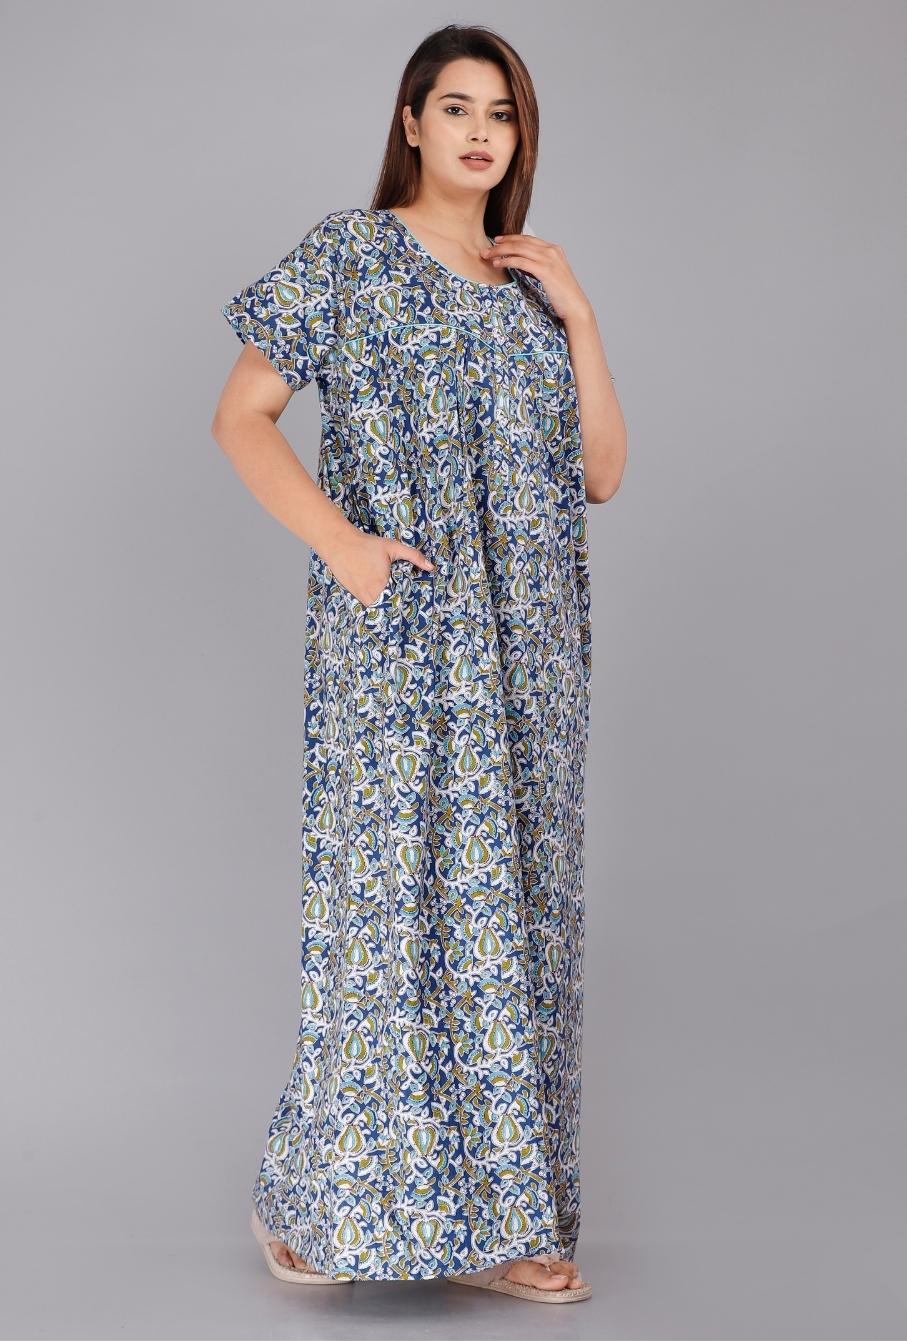 Worli Blue Nightwear Gowns jaipur cotton nighties online shopping